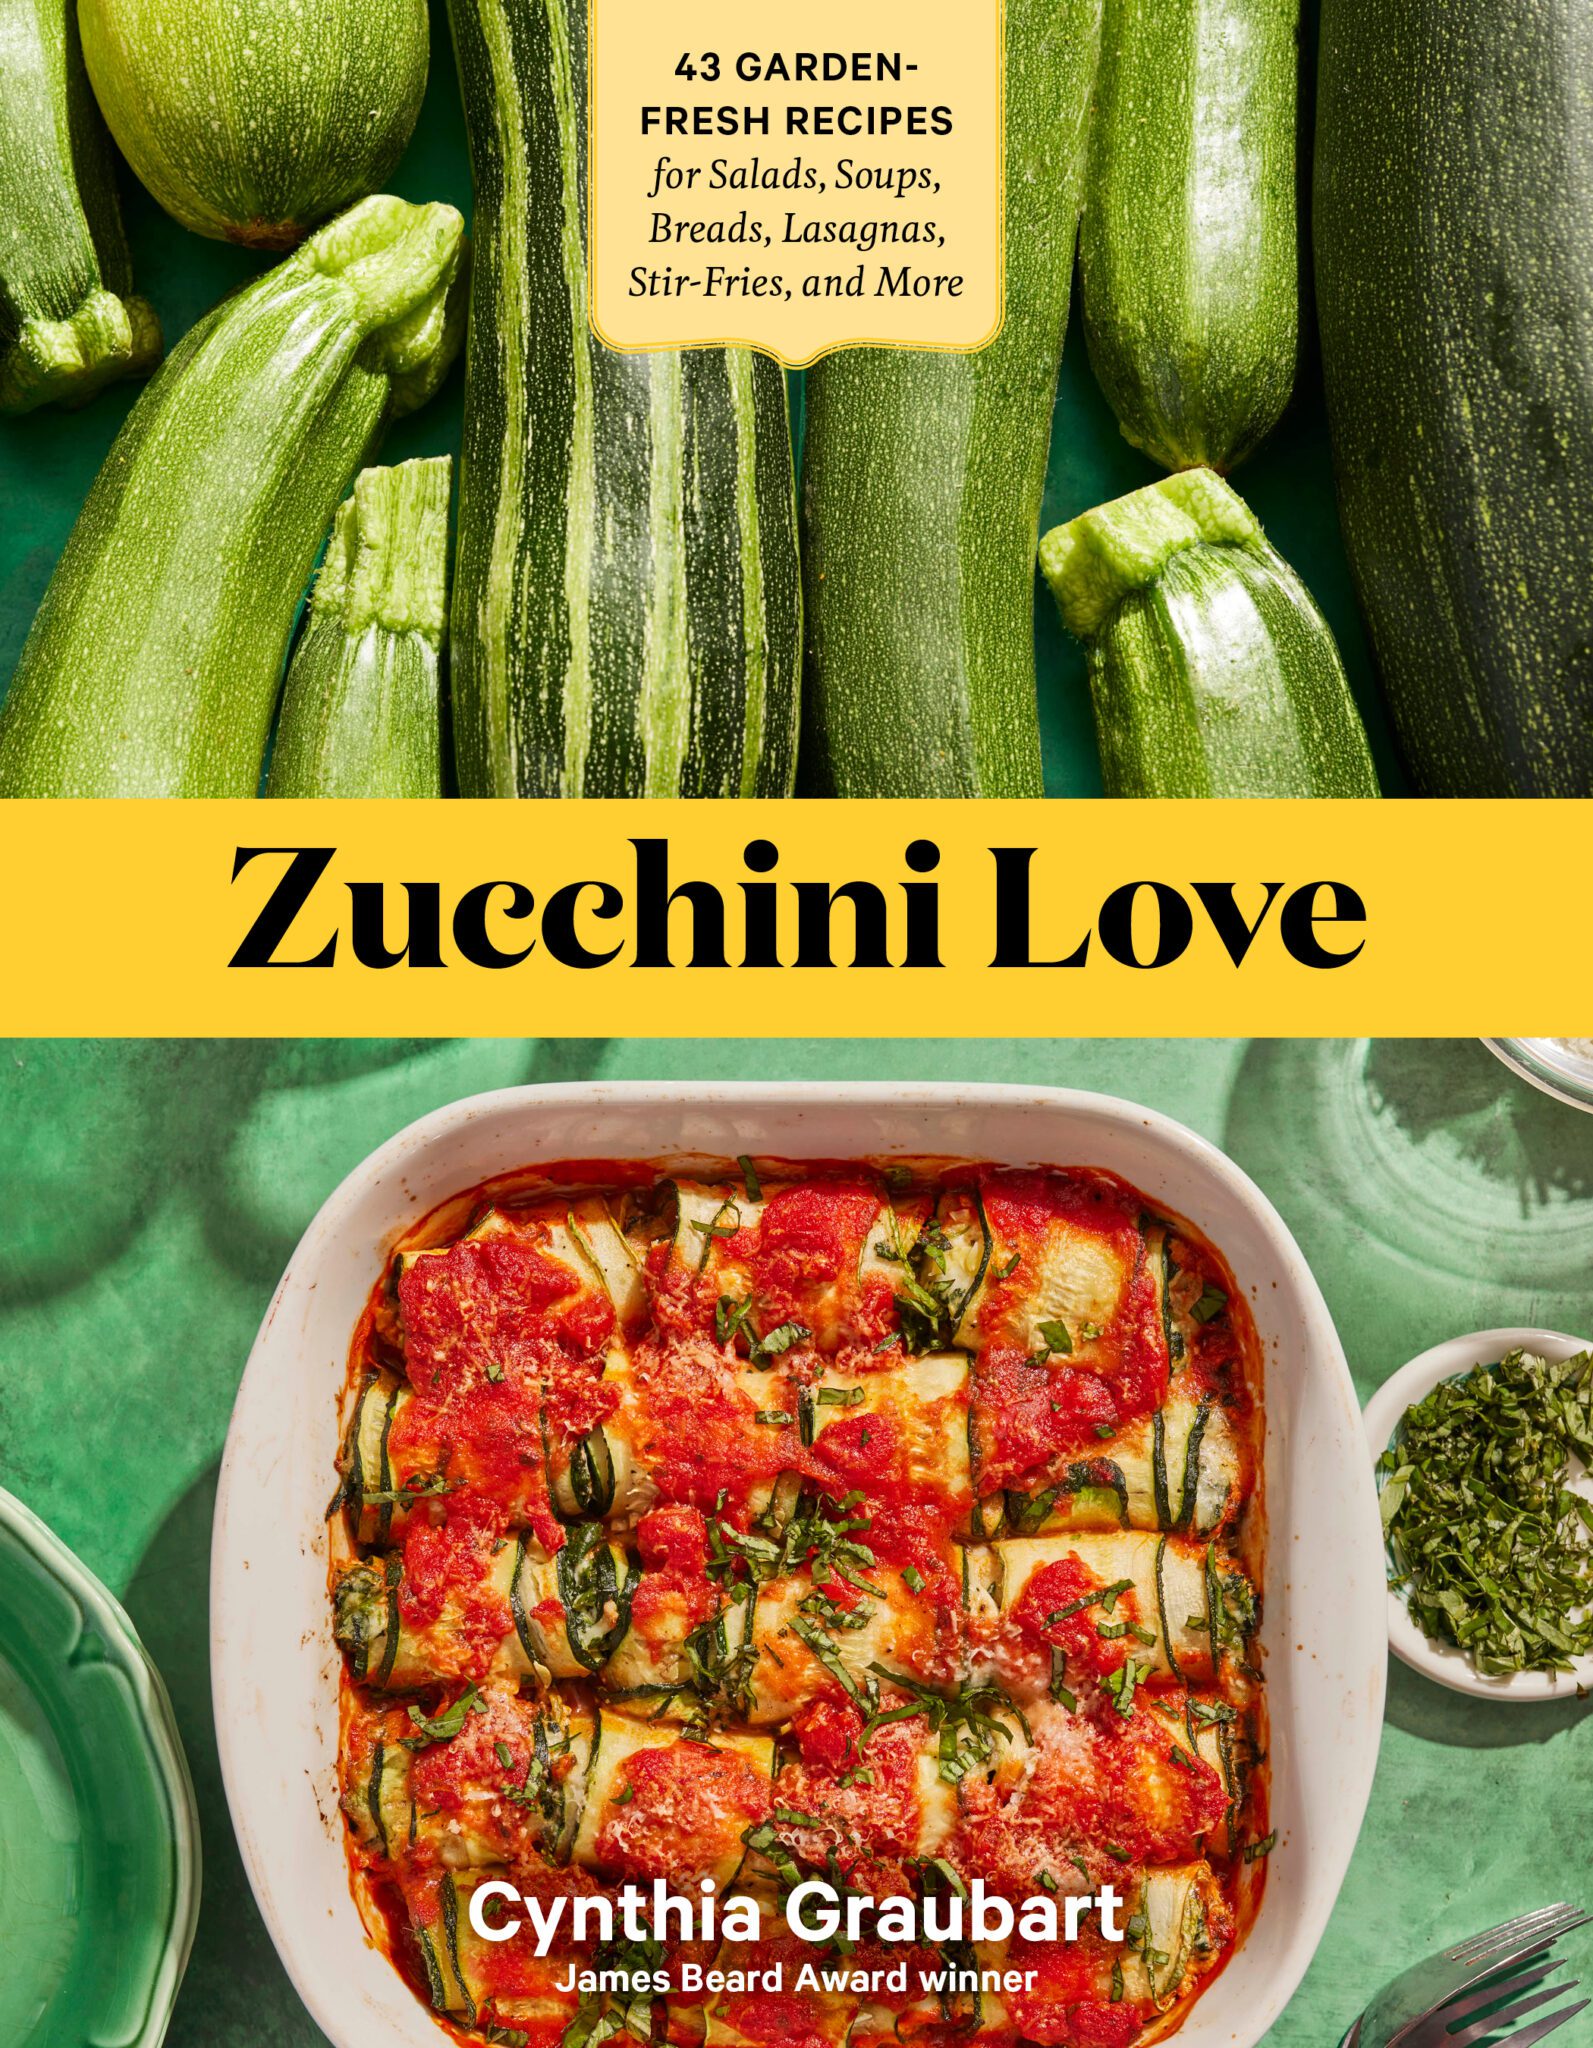 healthy zucchini recipes on www.virginiawillis.com